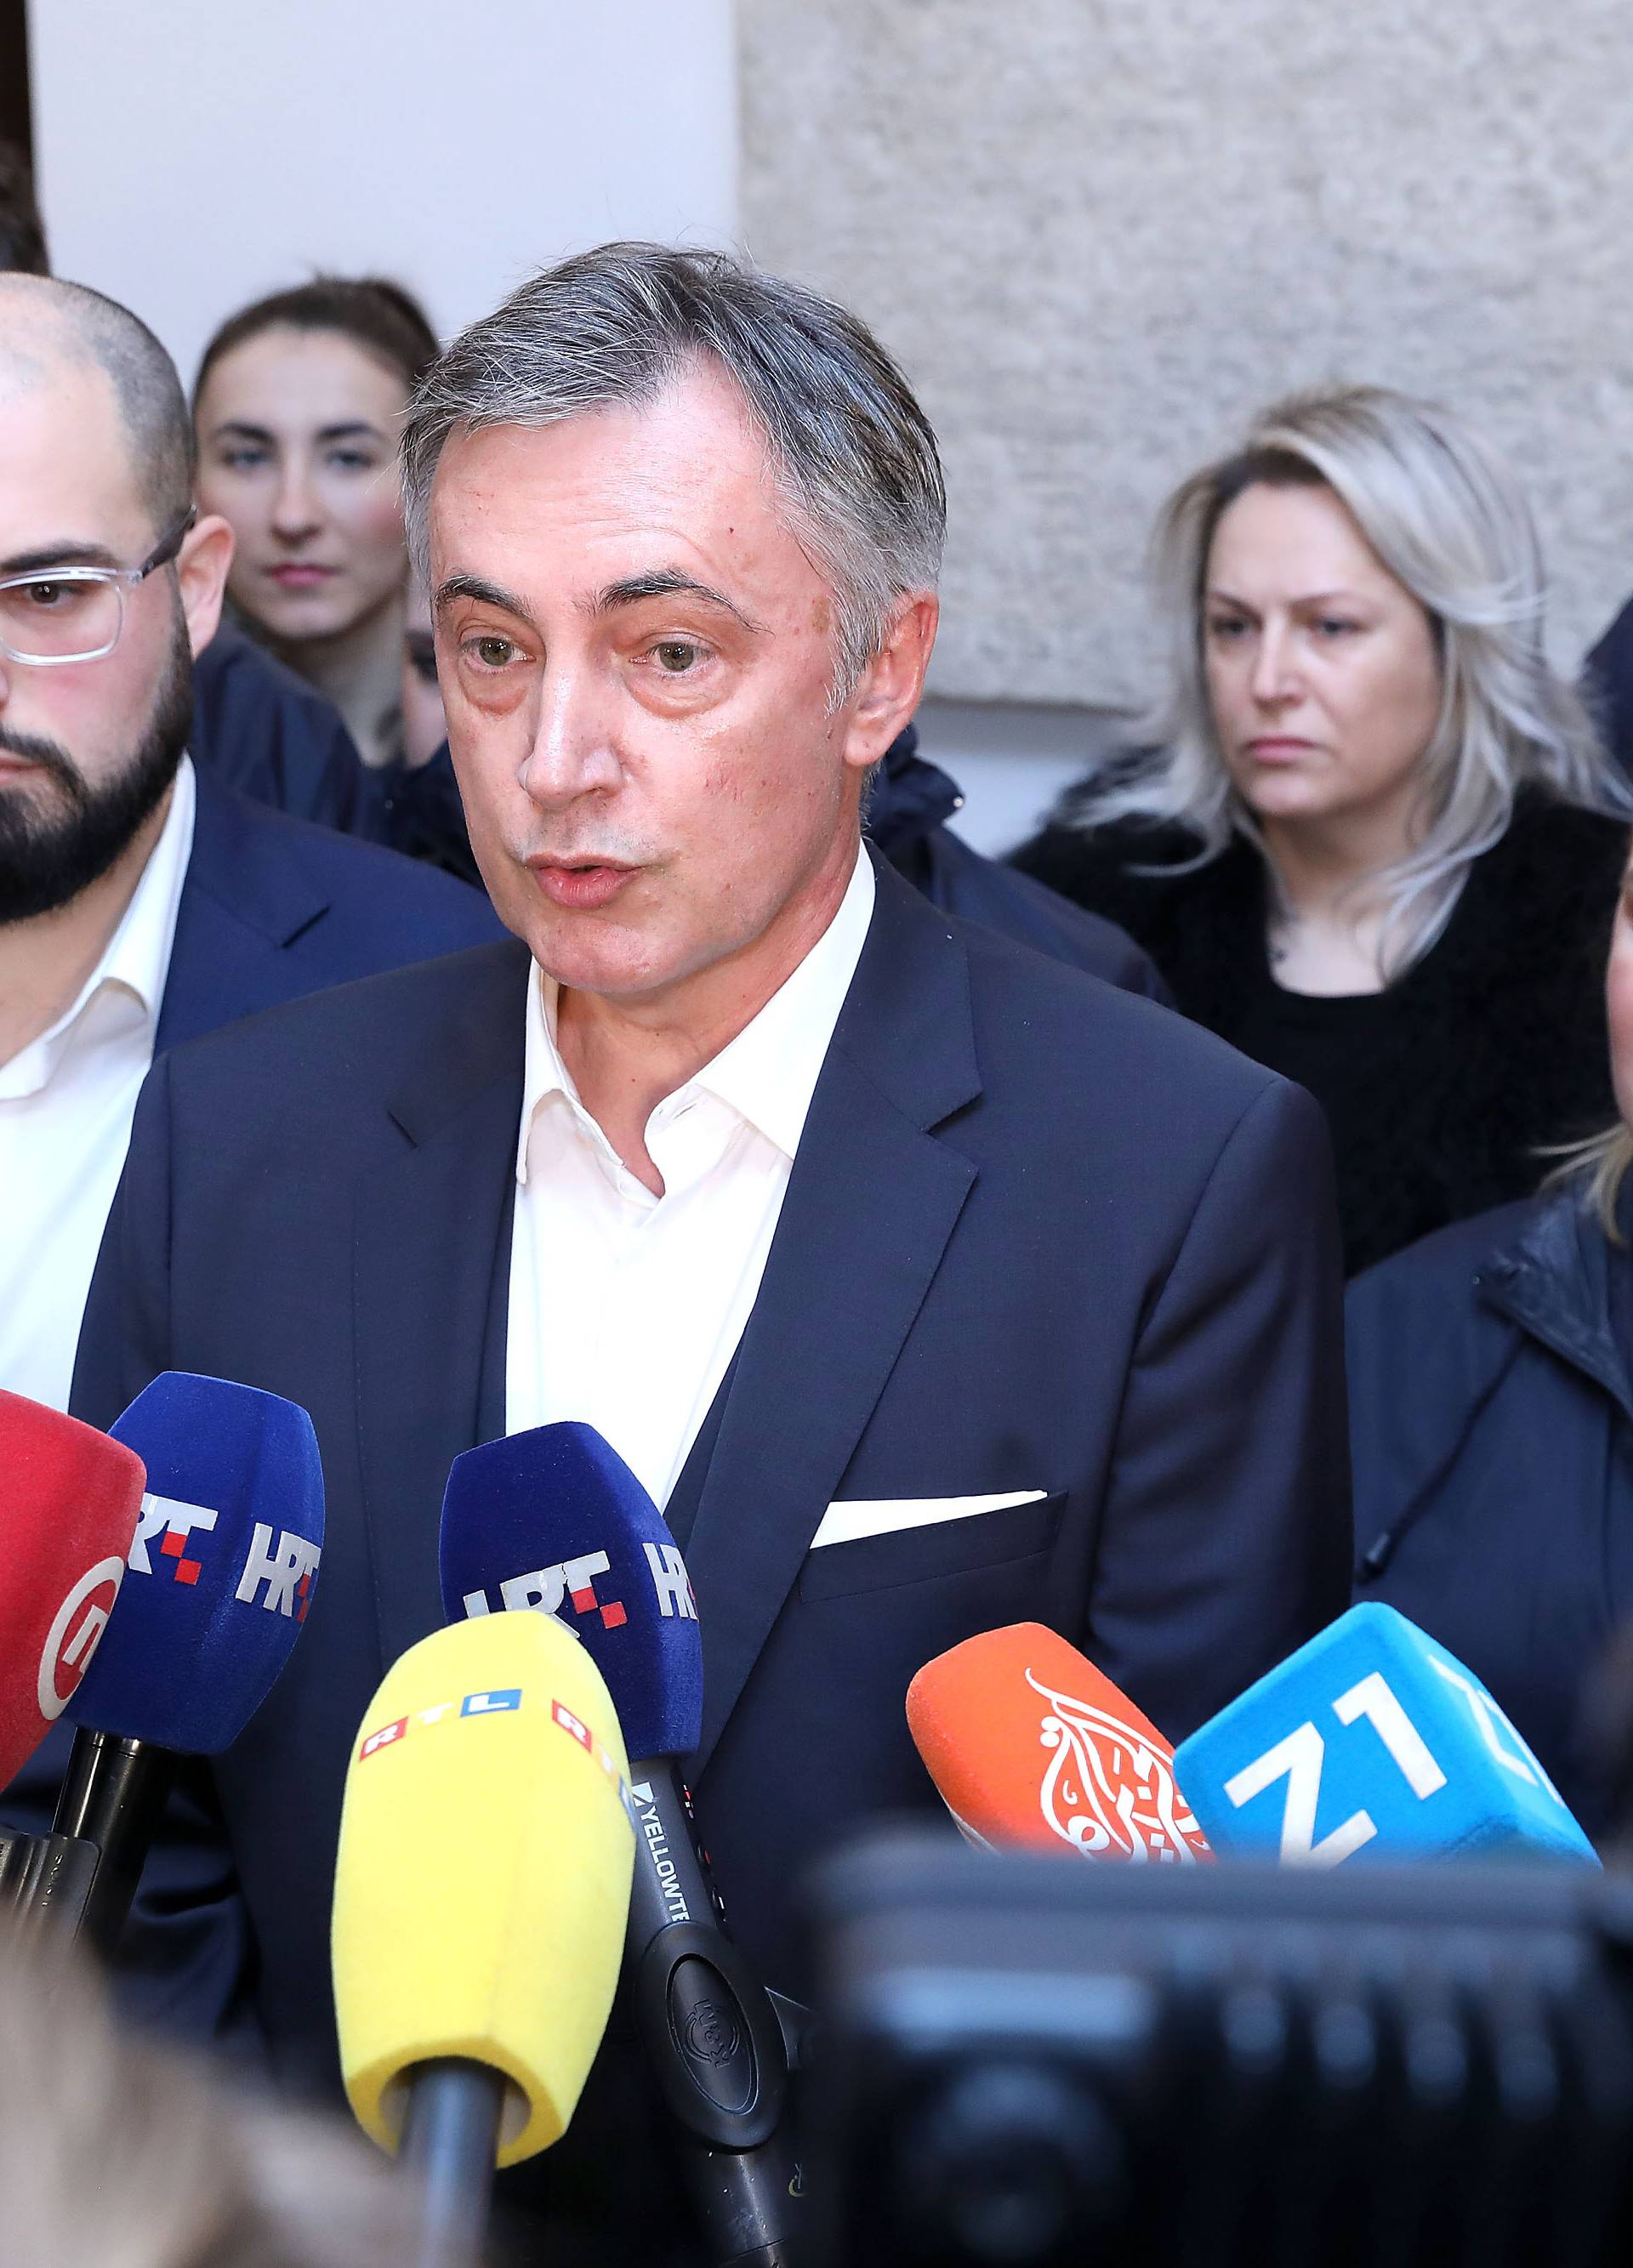 Zagreb: Miroslav Škoro predao je Drzavnom izbornom povjerenstvu kandidaturu za izbore